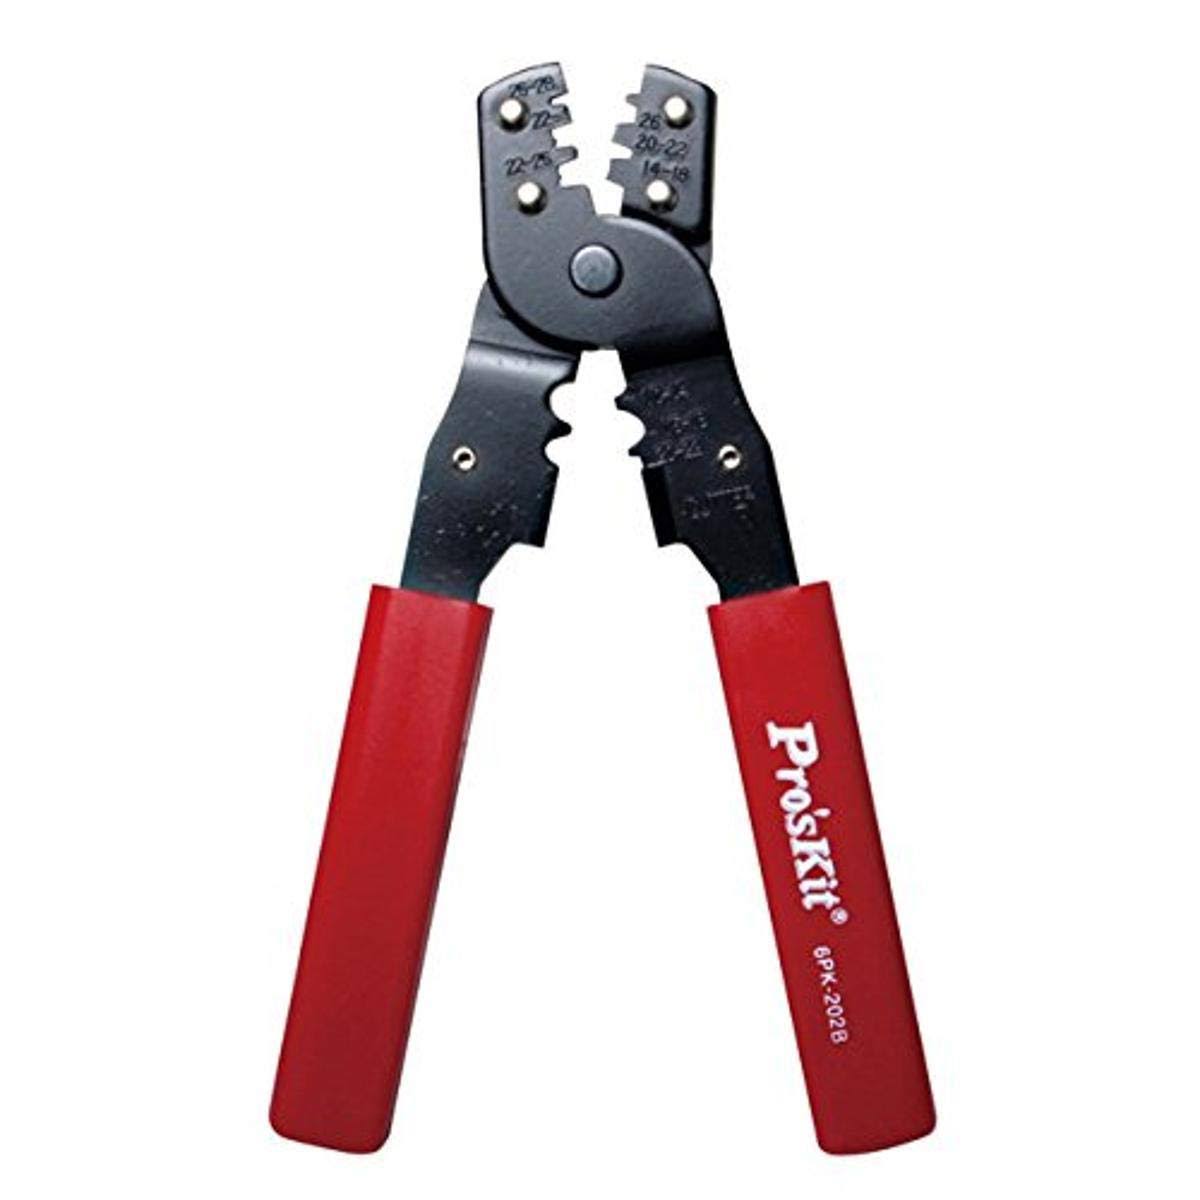 Pro'sKit 300-035 Multi-purpose Crimping Tool